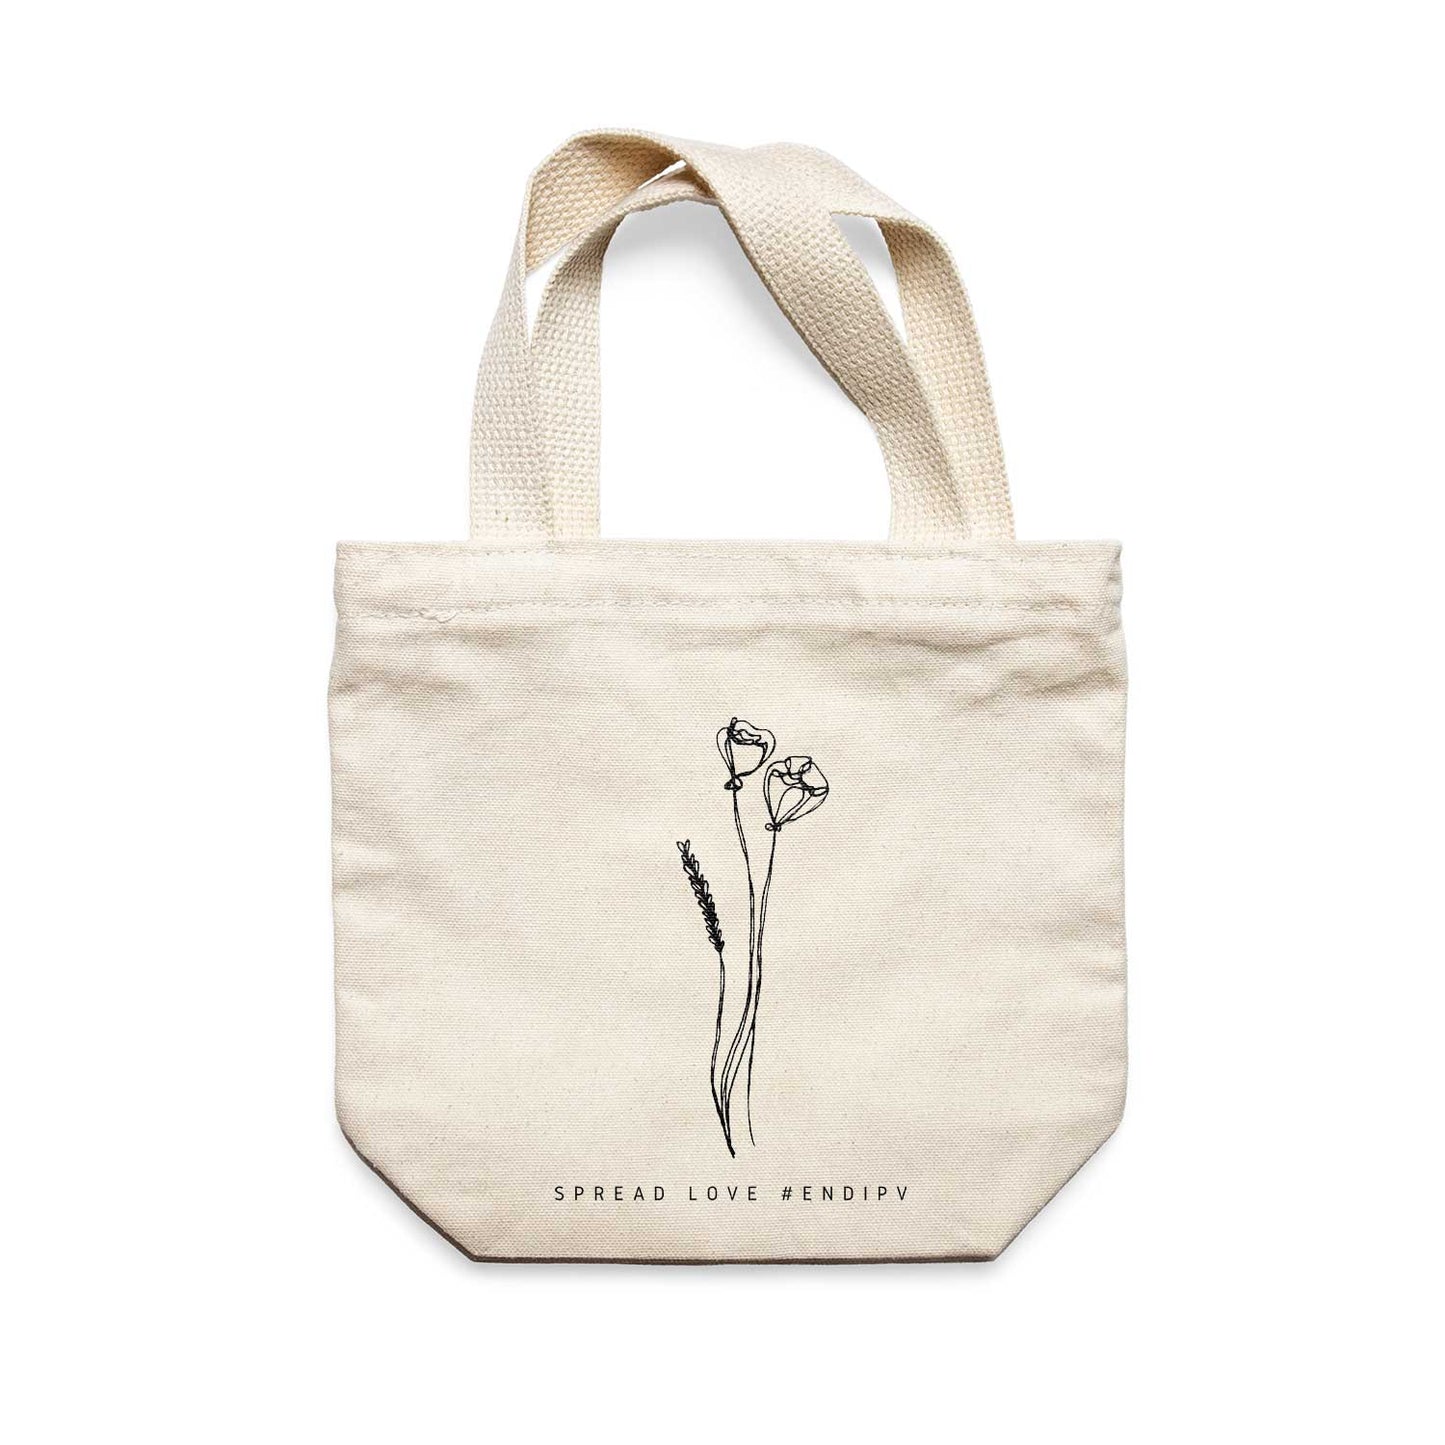 תיק צד לנשים וגברים מבד 100% כותנה טבעית בעיצוב One Line Floral - Bouquet Tote Bag מציור מקורי של גאיה